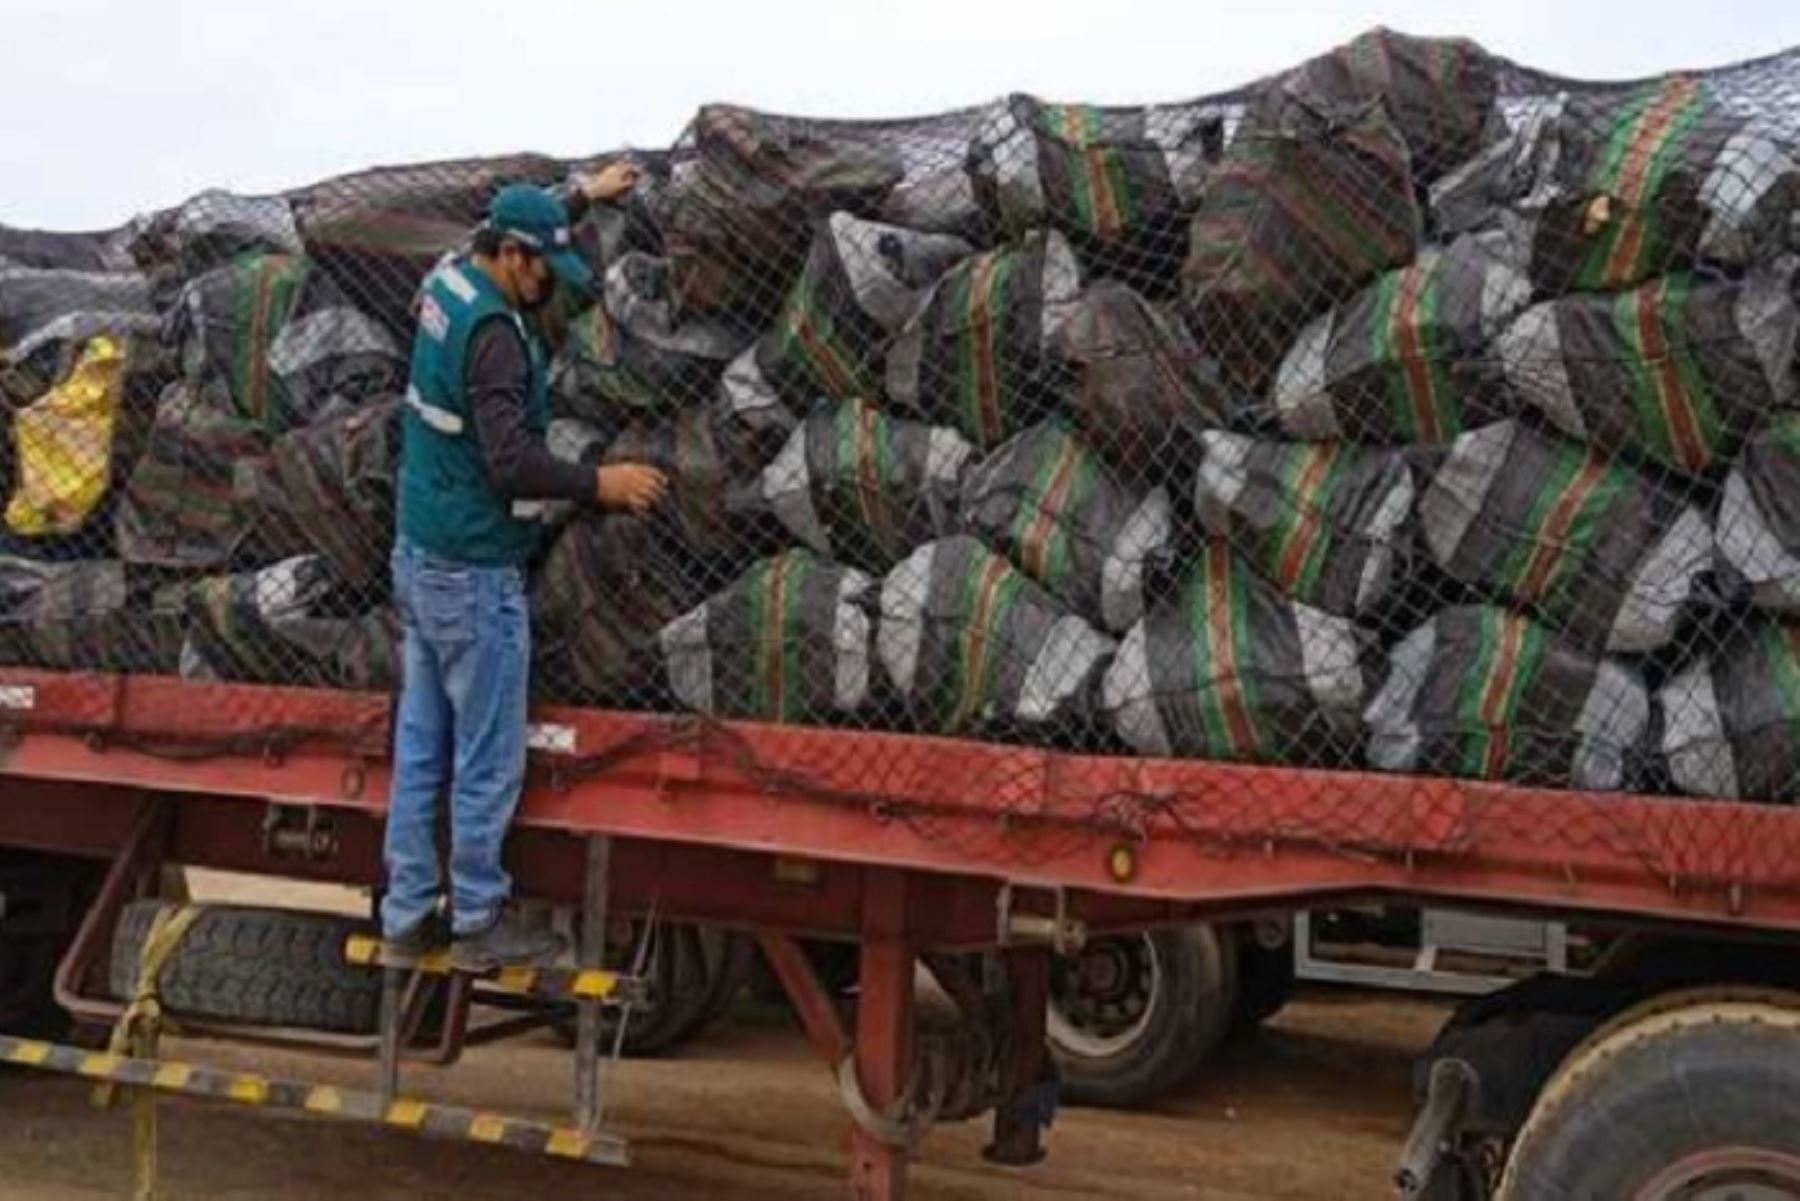 El cargamento de palo santo se dirigía a Desagüadero, frontera con Bolivia.